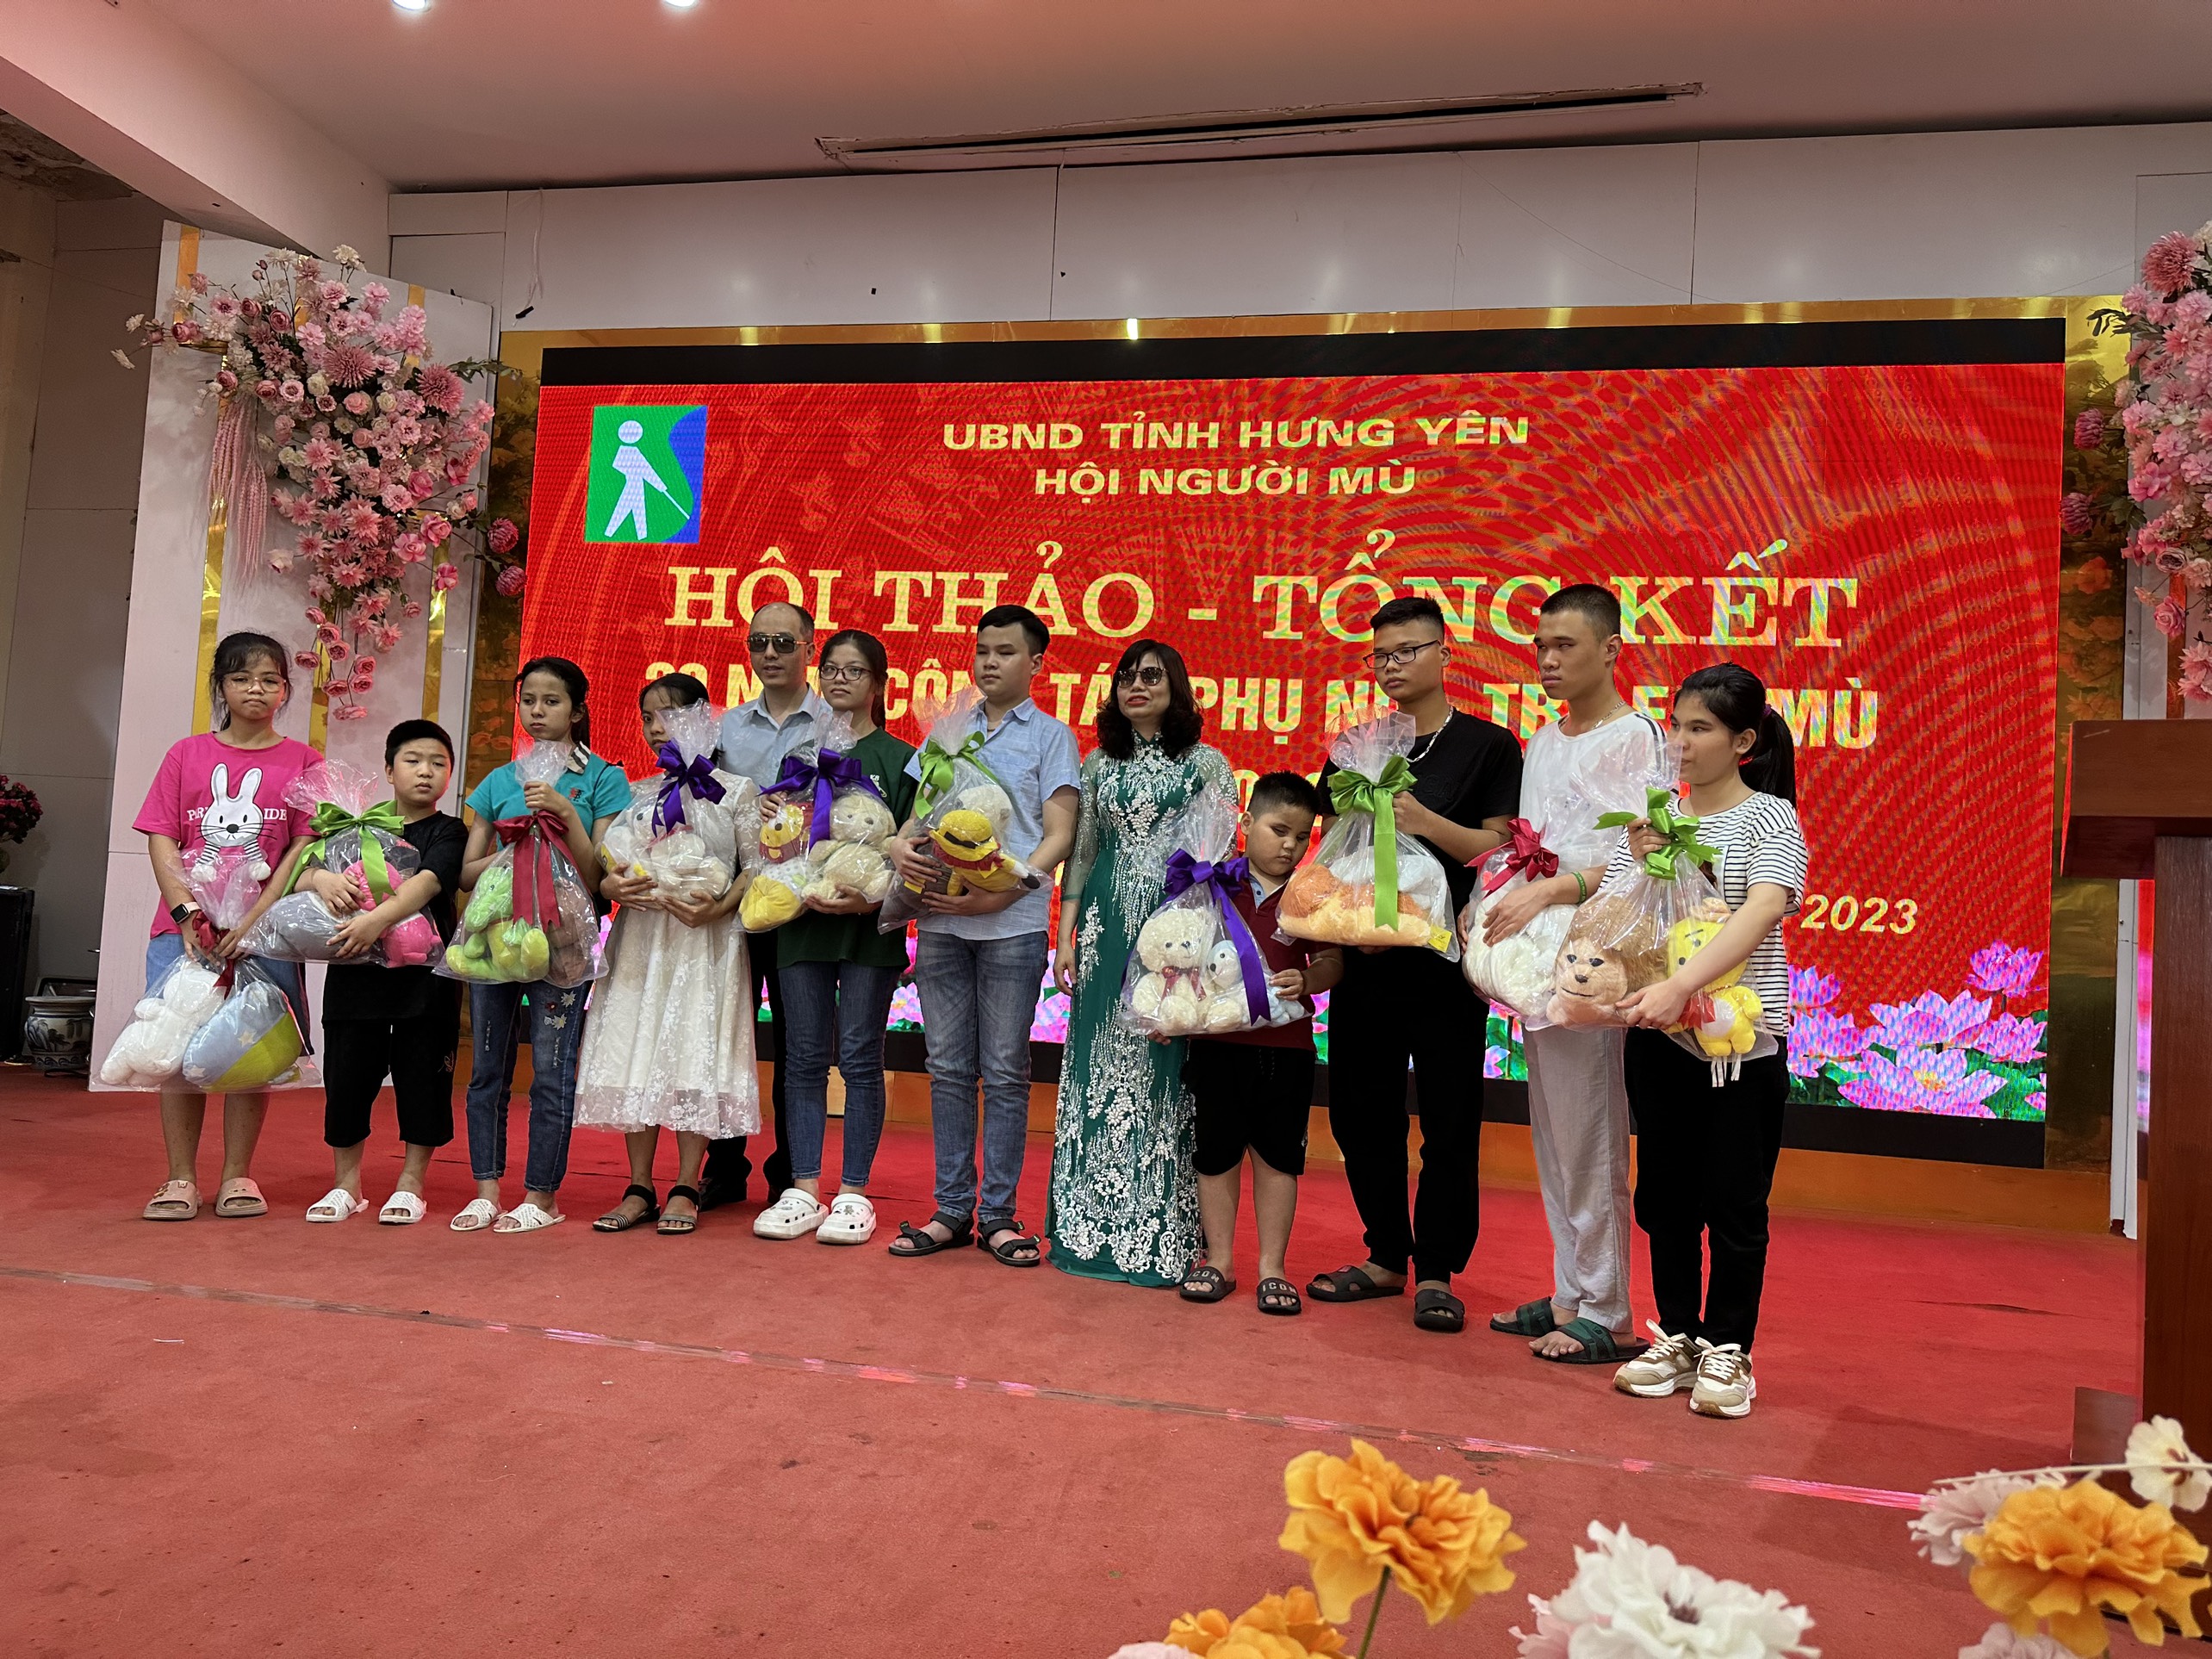 Tổng kết 20 năm triển khai công tác phụ nữ và trẻ em mù tại Hưng Yên